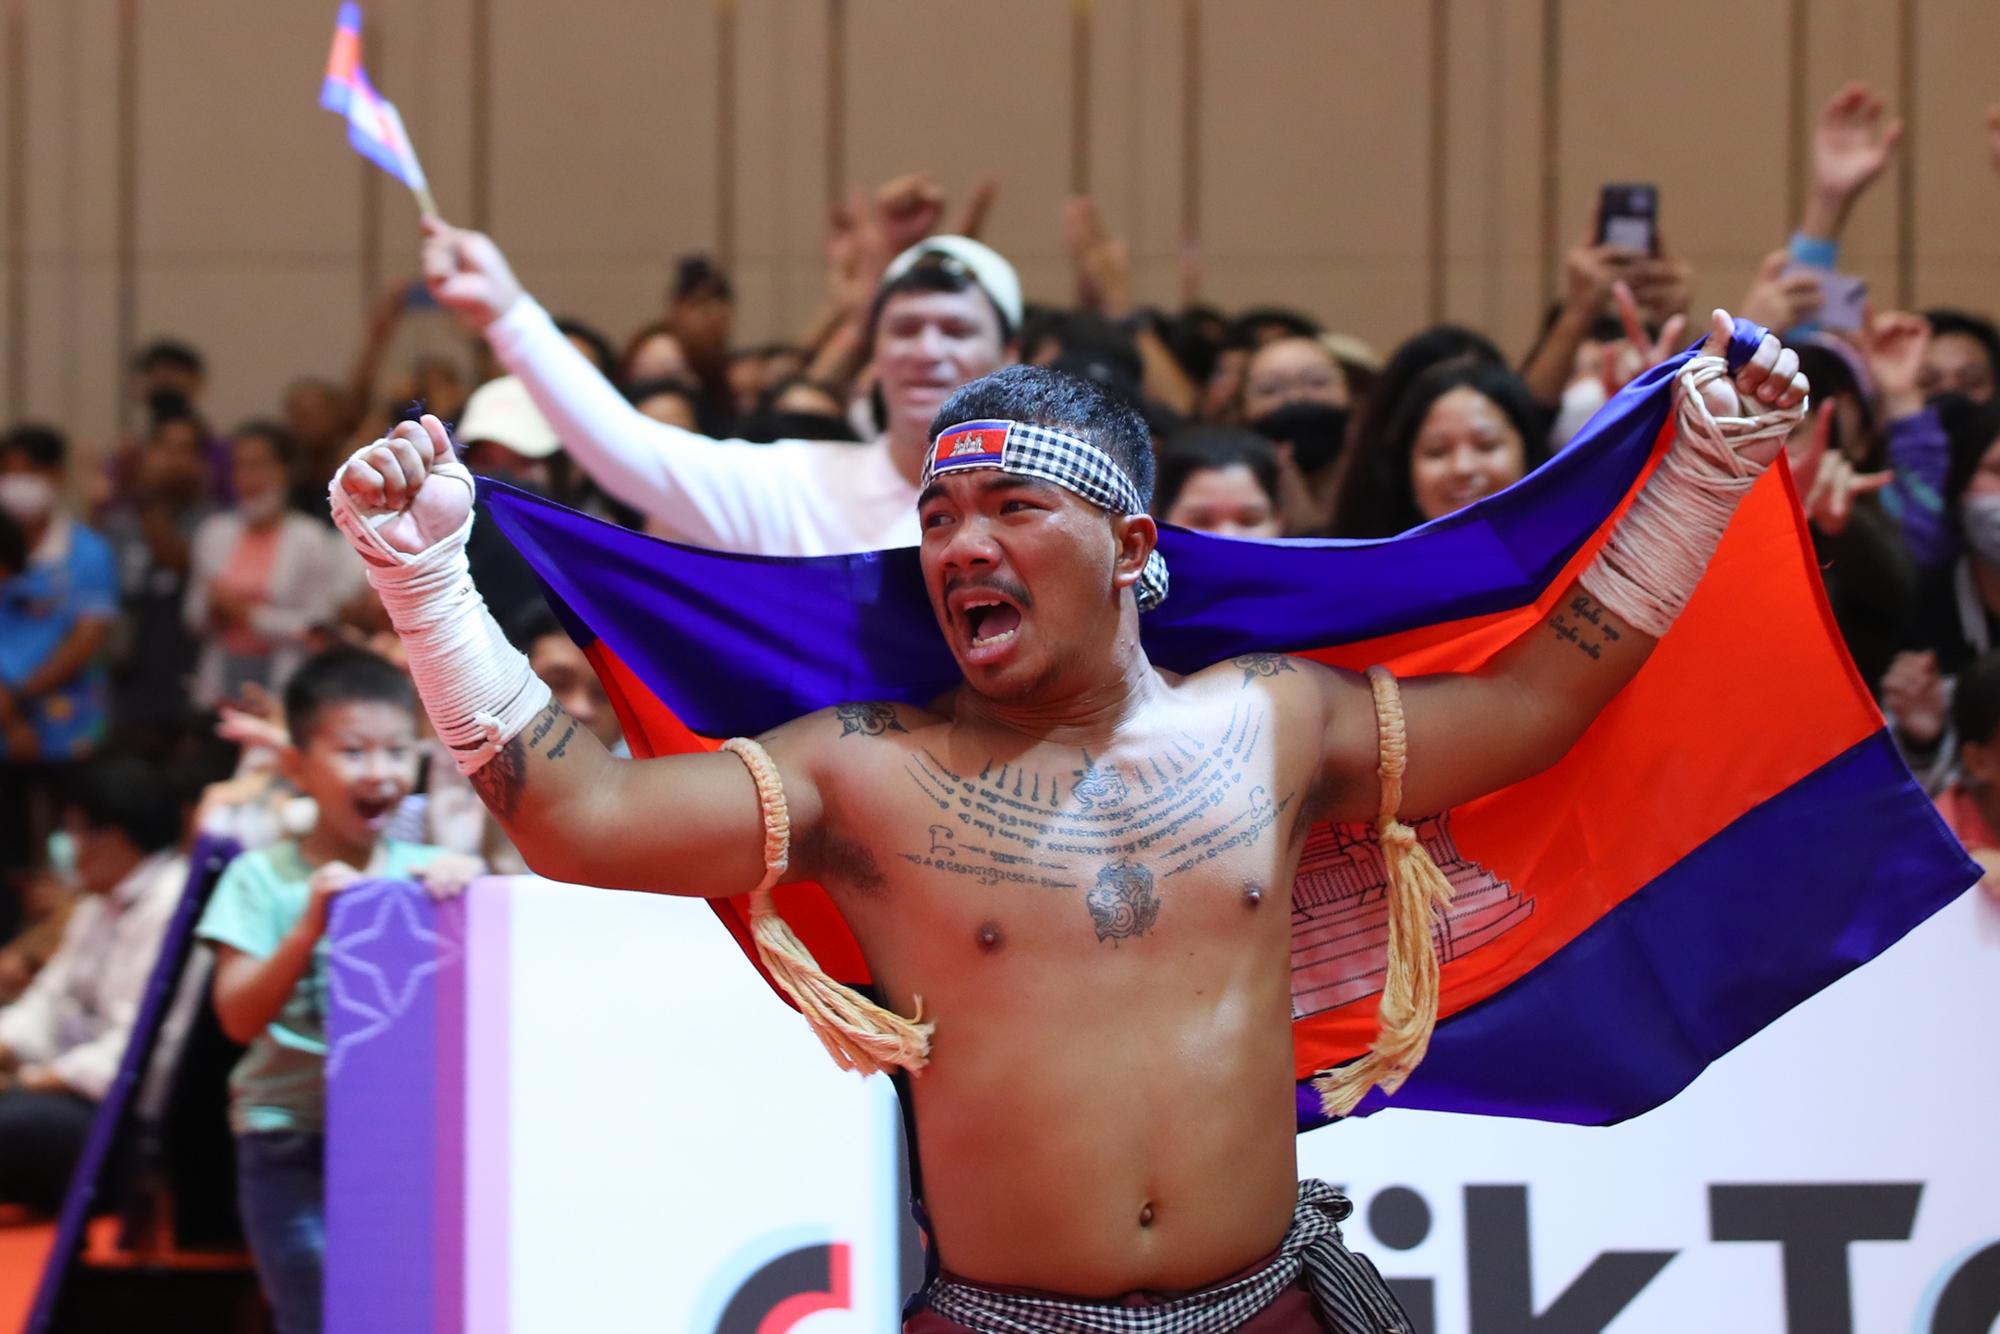 Võ sĩ Campuchia gào thét khi giành tấm huy chương vàng ở môn võ lạ - Ảnh 9.